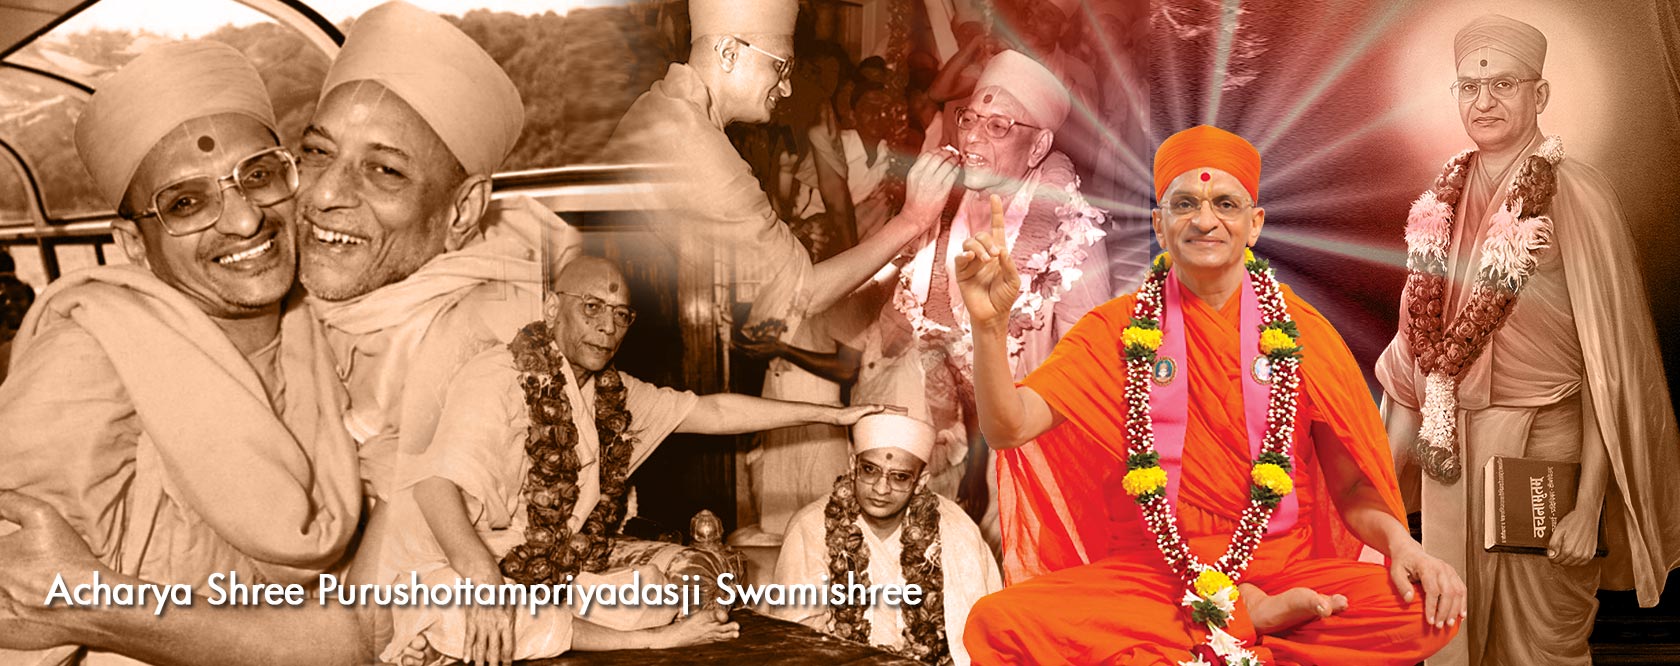 Acharya Shree Purushottampriyadasji Swamishree Maharaj - Ibandhu